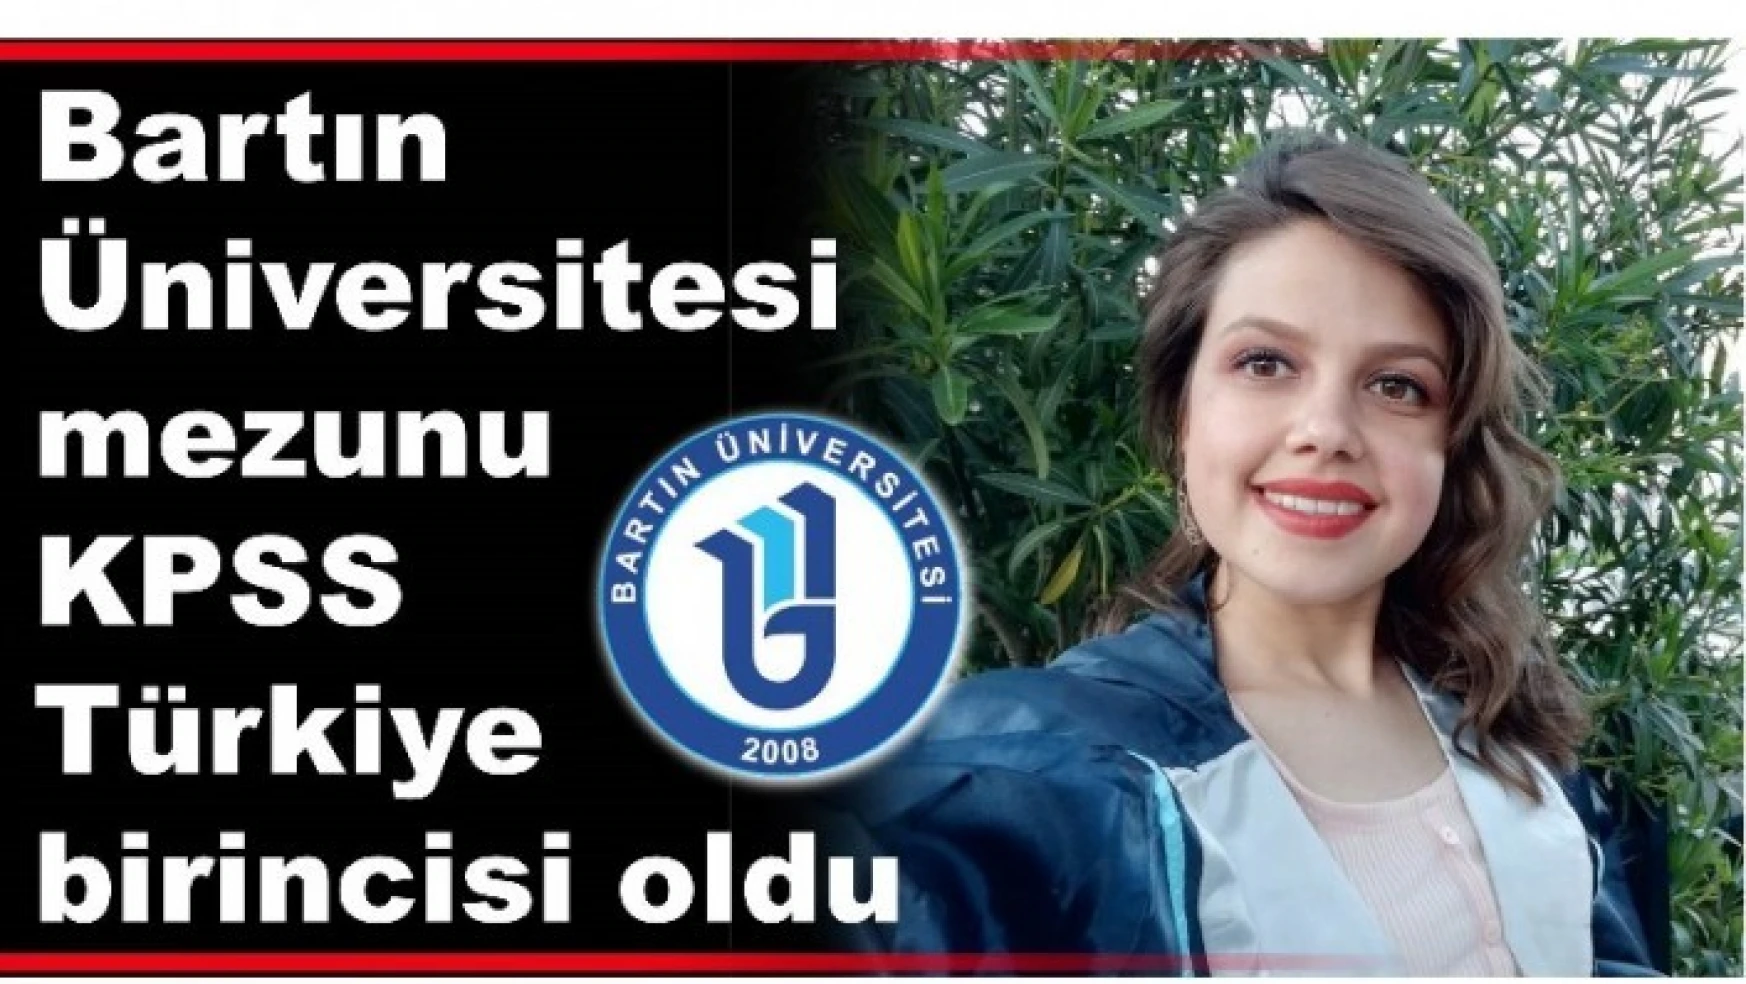 Bartın Üniversitesi mezunu KPSS Türkiye birincisi oldu